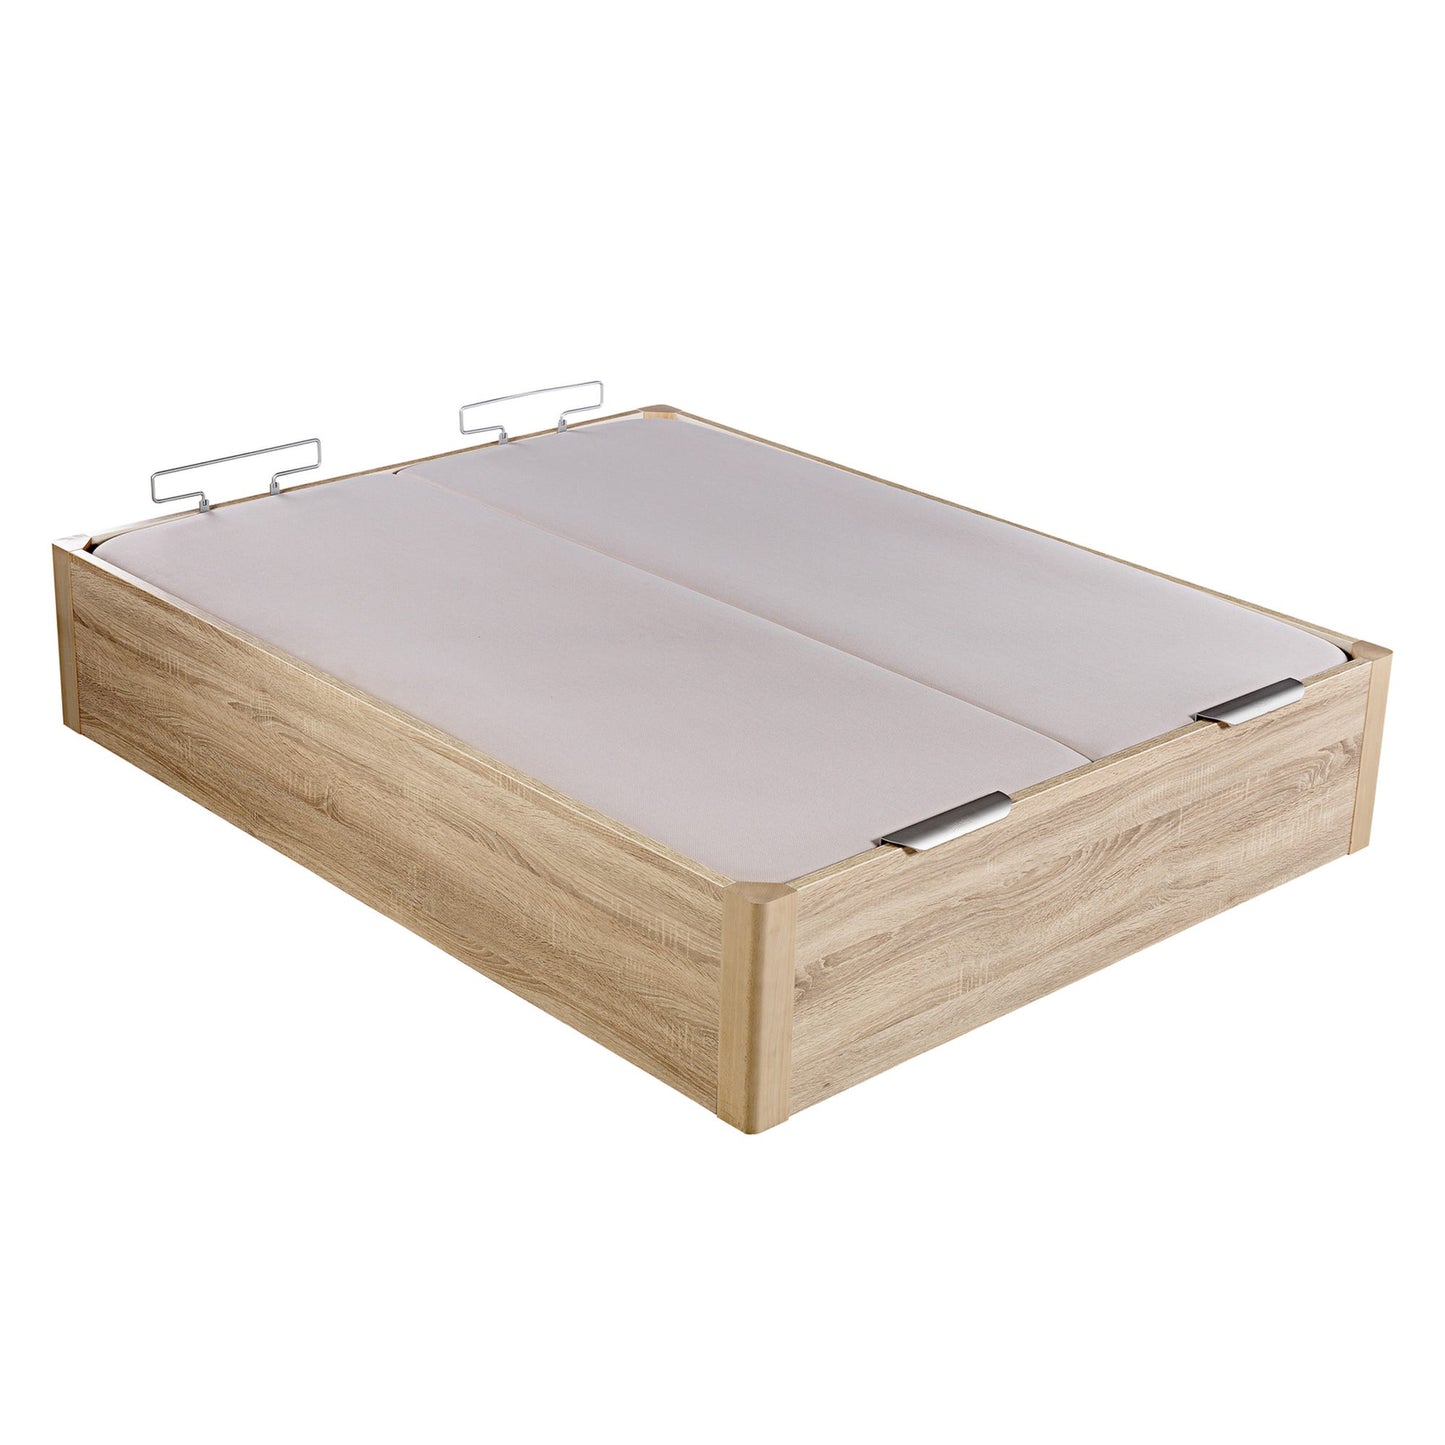 Canapé abatible de madera de alta capacidad tapa doble de color natural - DESIGN - 200x200